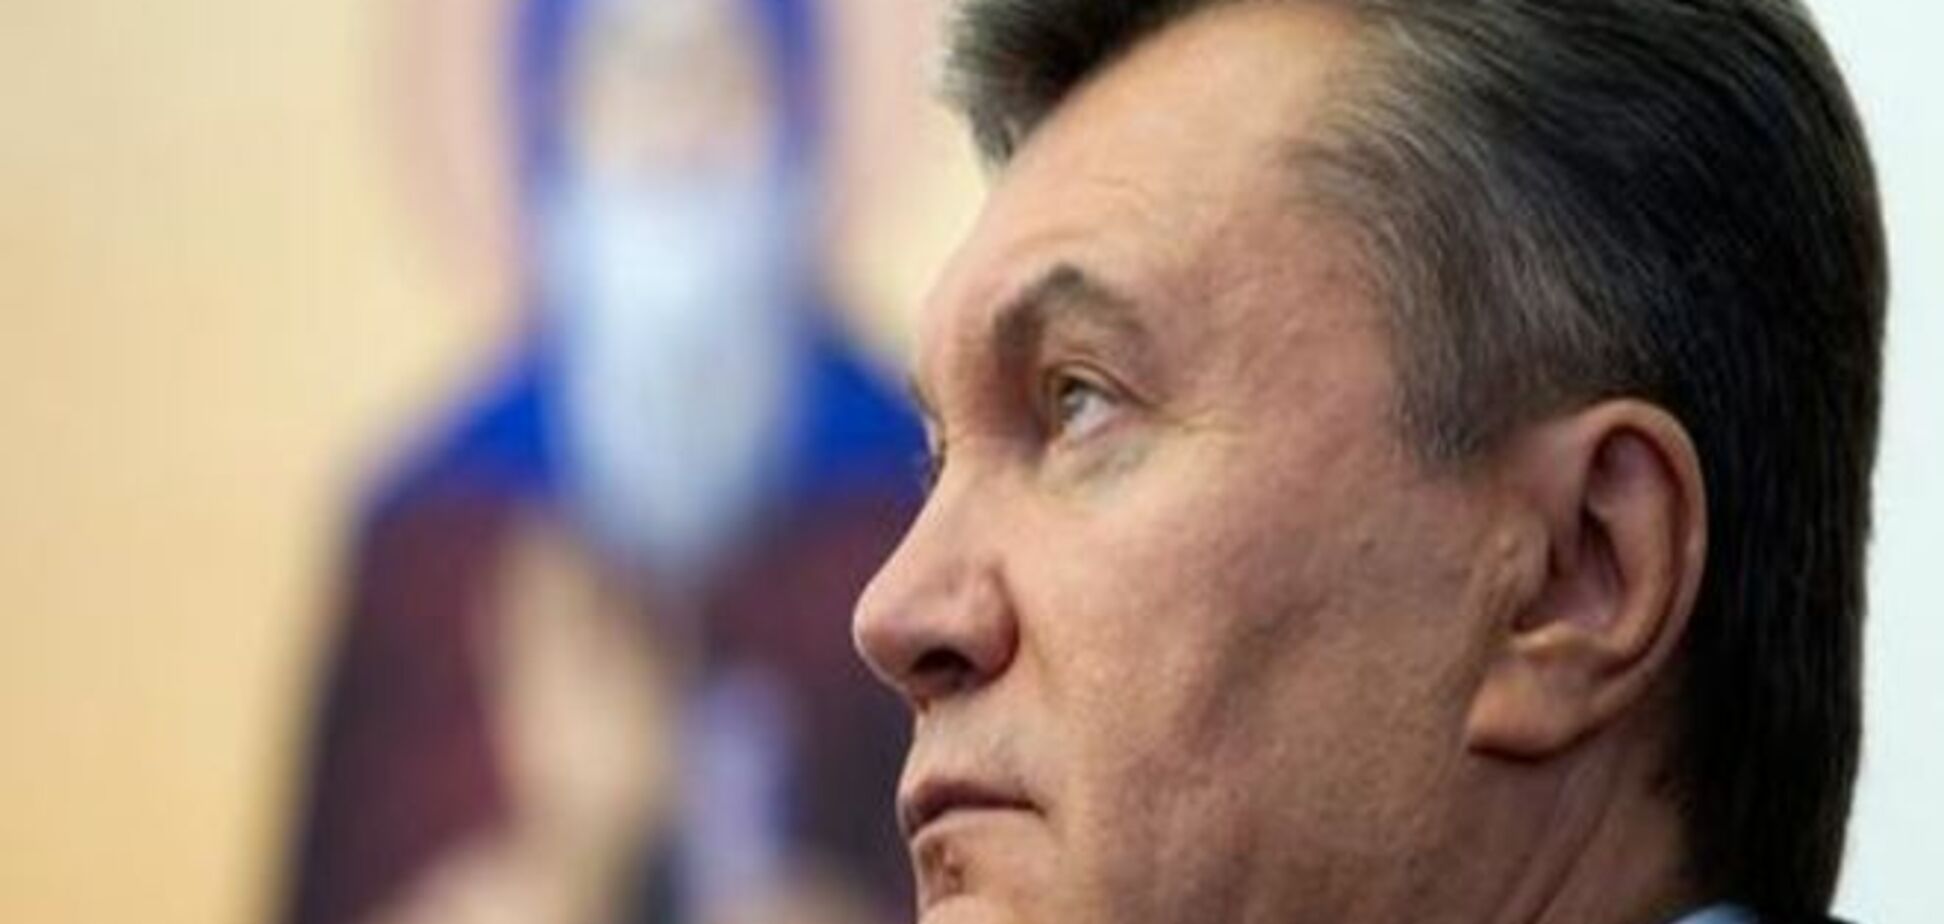 ЕС может отменить санкции против окружения Януковича